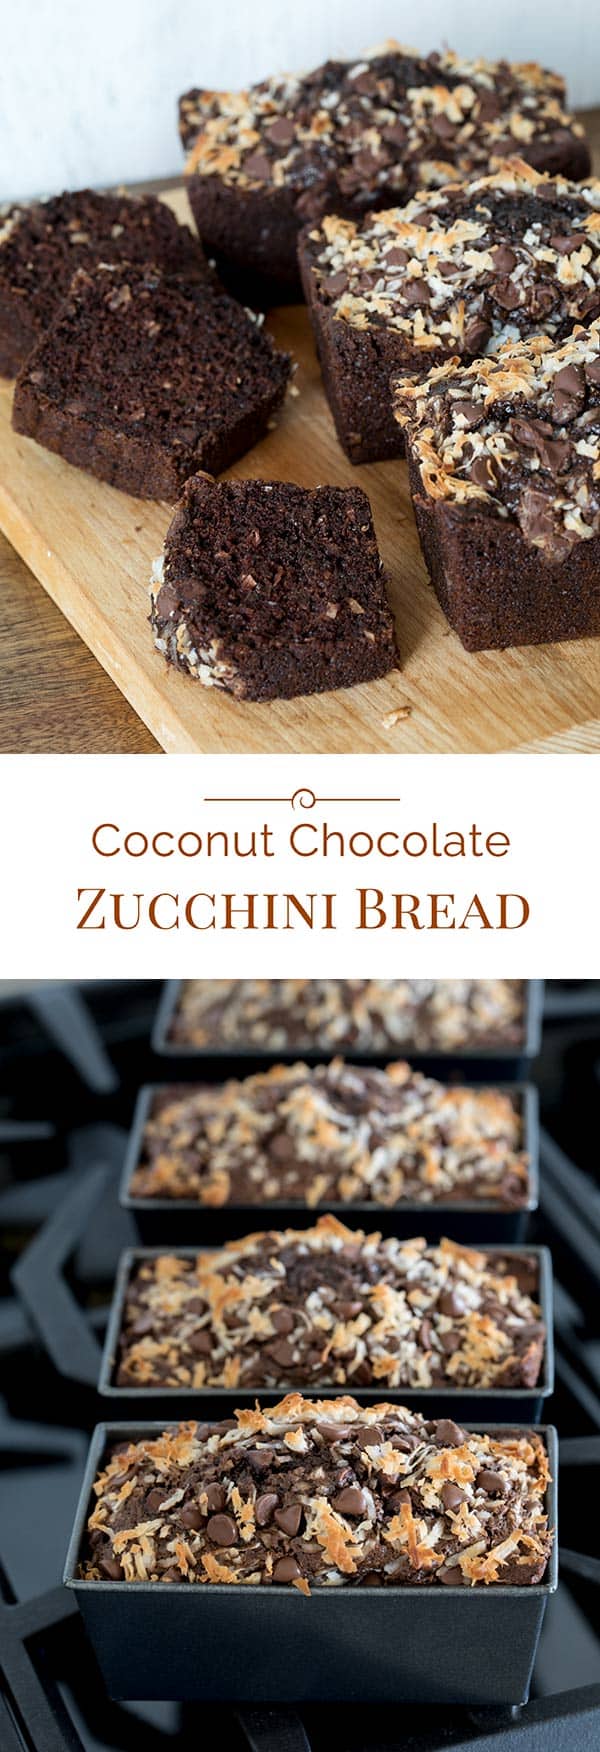 Coconut-Chocolate-Zucchini-Bread-Collage-Barbara-Bakes